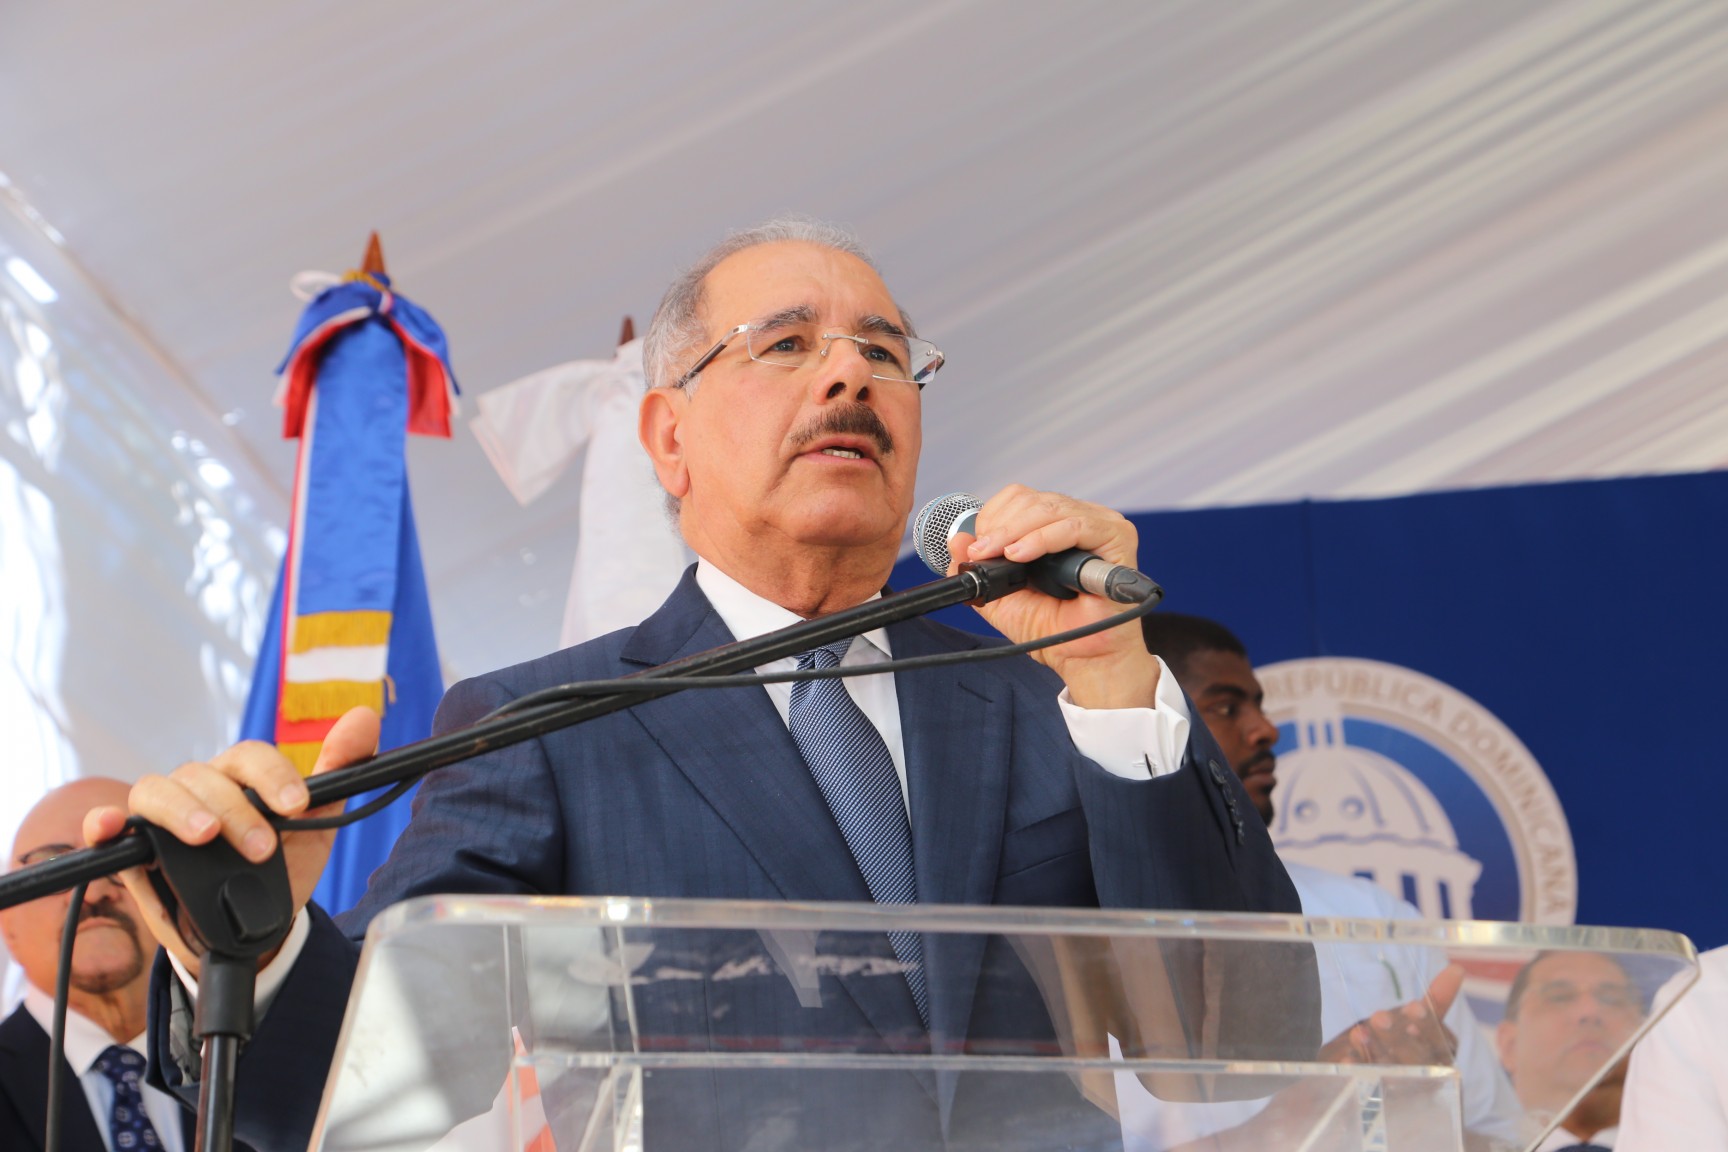 REPÚBLICA DOMINICANA: Danilo Medina se pone al frente de Acueducto Monción: Les prometo que vendrán funcionarios del INAPA para que comencemos la construcción